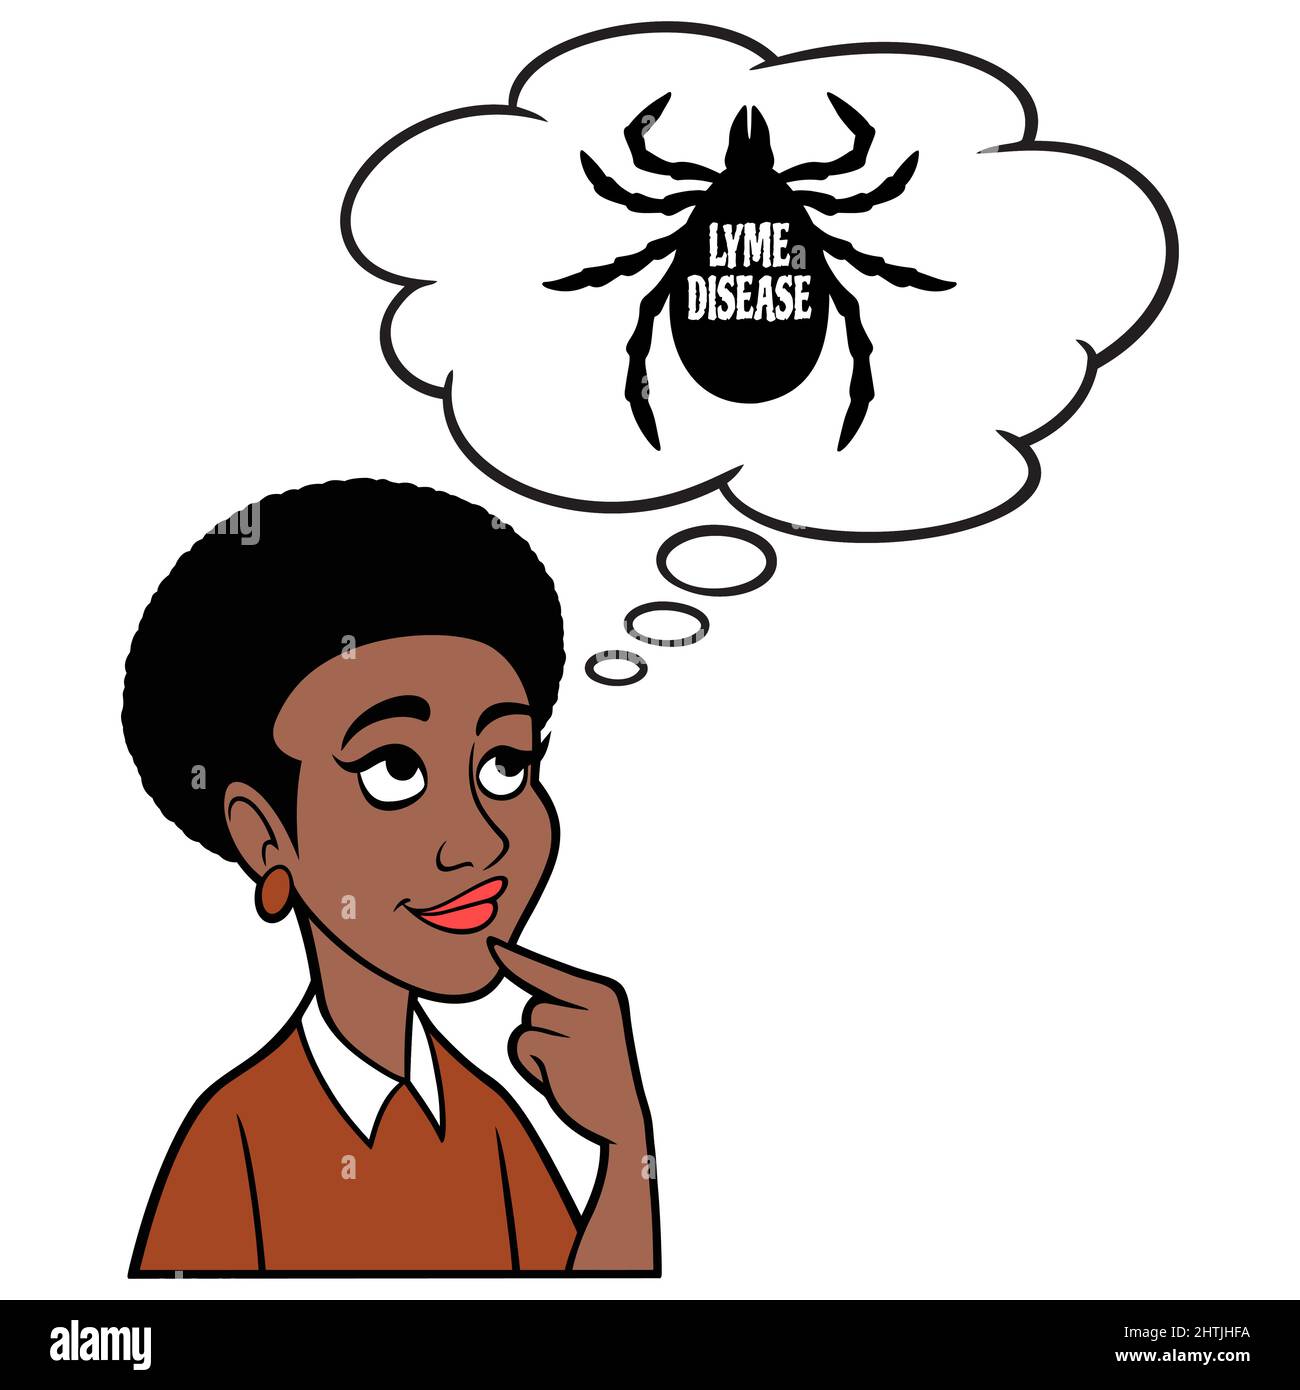 Black Woman denken über Lyme-Borreliose - Eine Karikatur Illustration einer schwarzen Frau denken über Komplikationen der Lyme-Borreliose. Stock Vektor